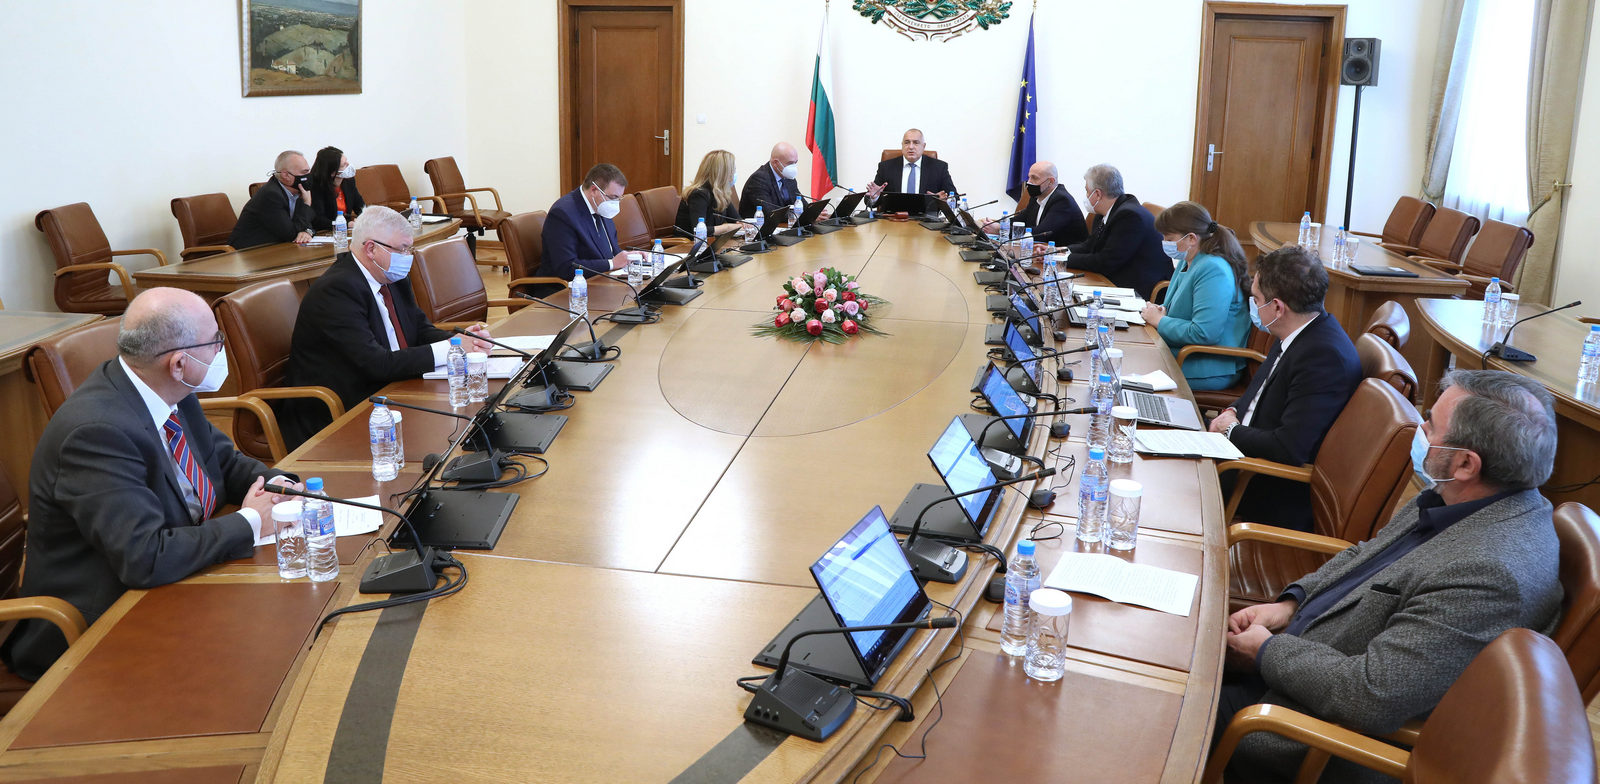 Bulgaristan Hükümeti’nden eğitim geliştirme programlarına maddi destek